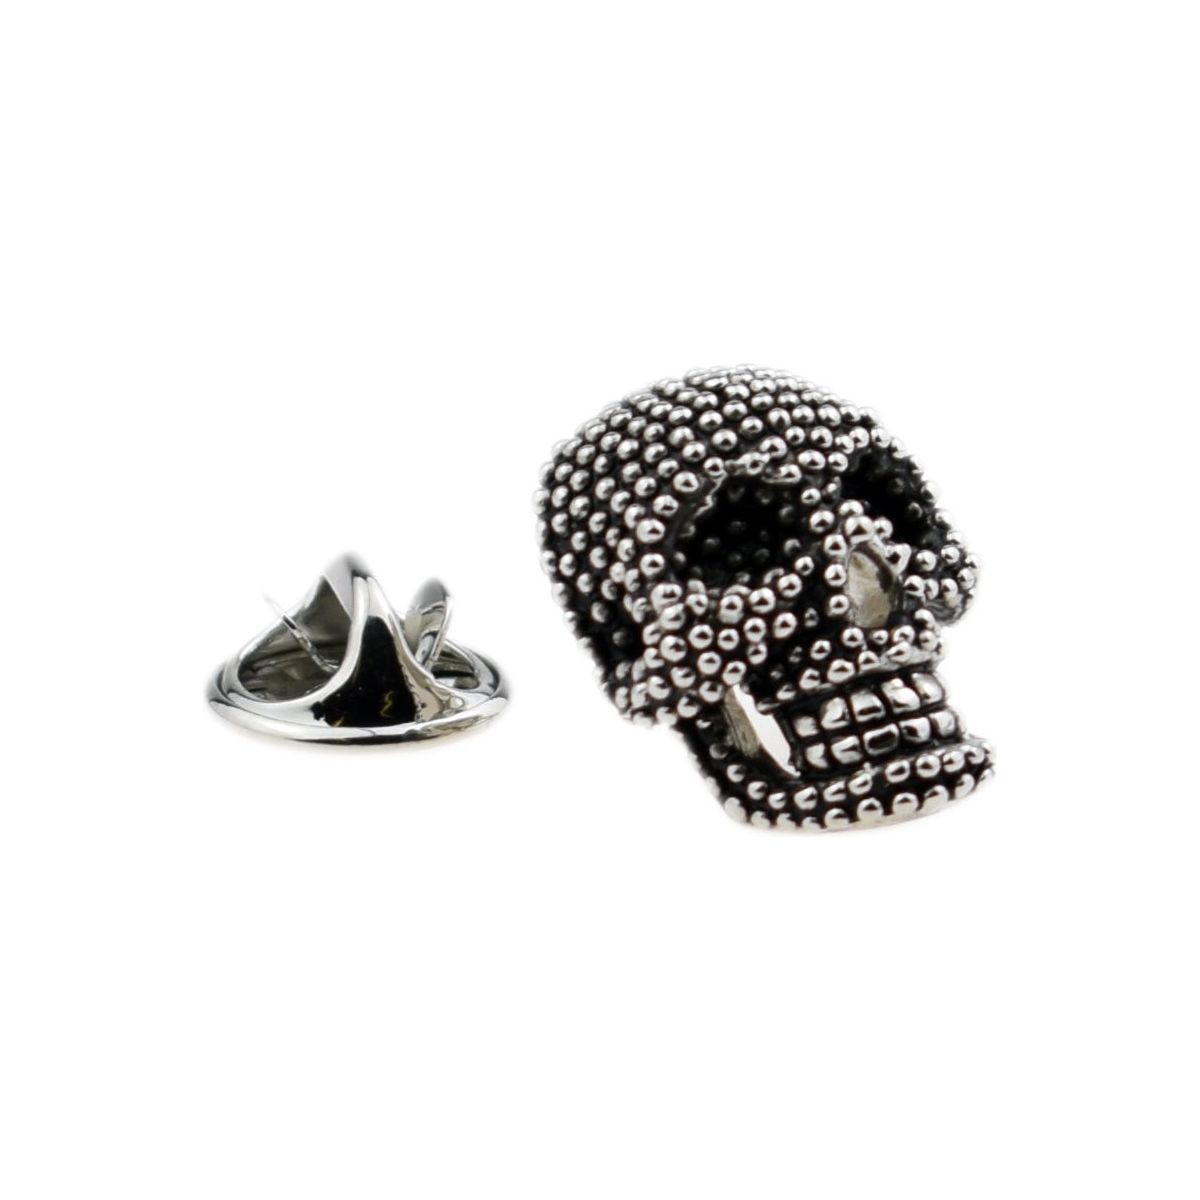 Studded Skull Design Lapel Pin Badge - Ashton and Finch